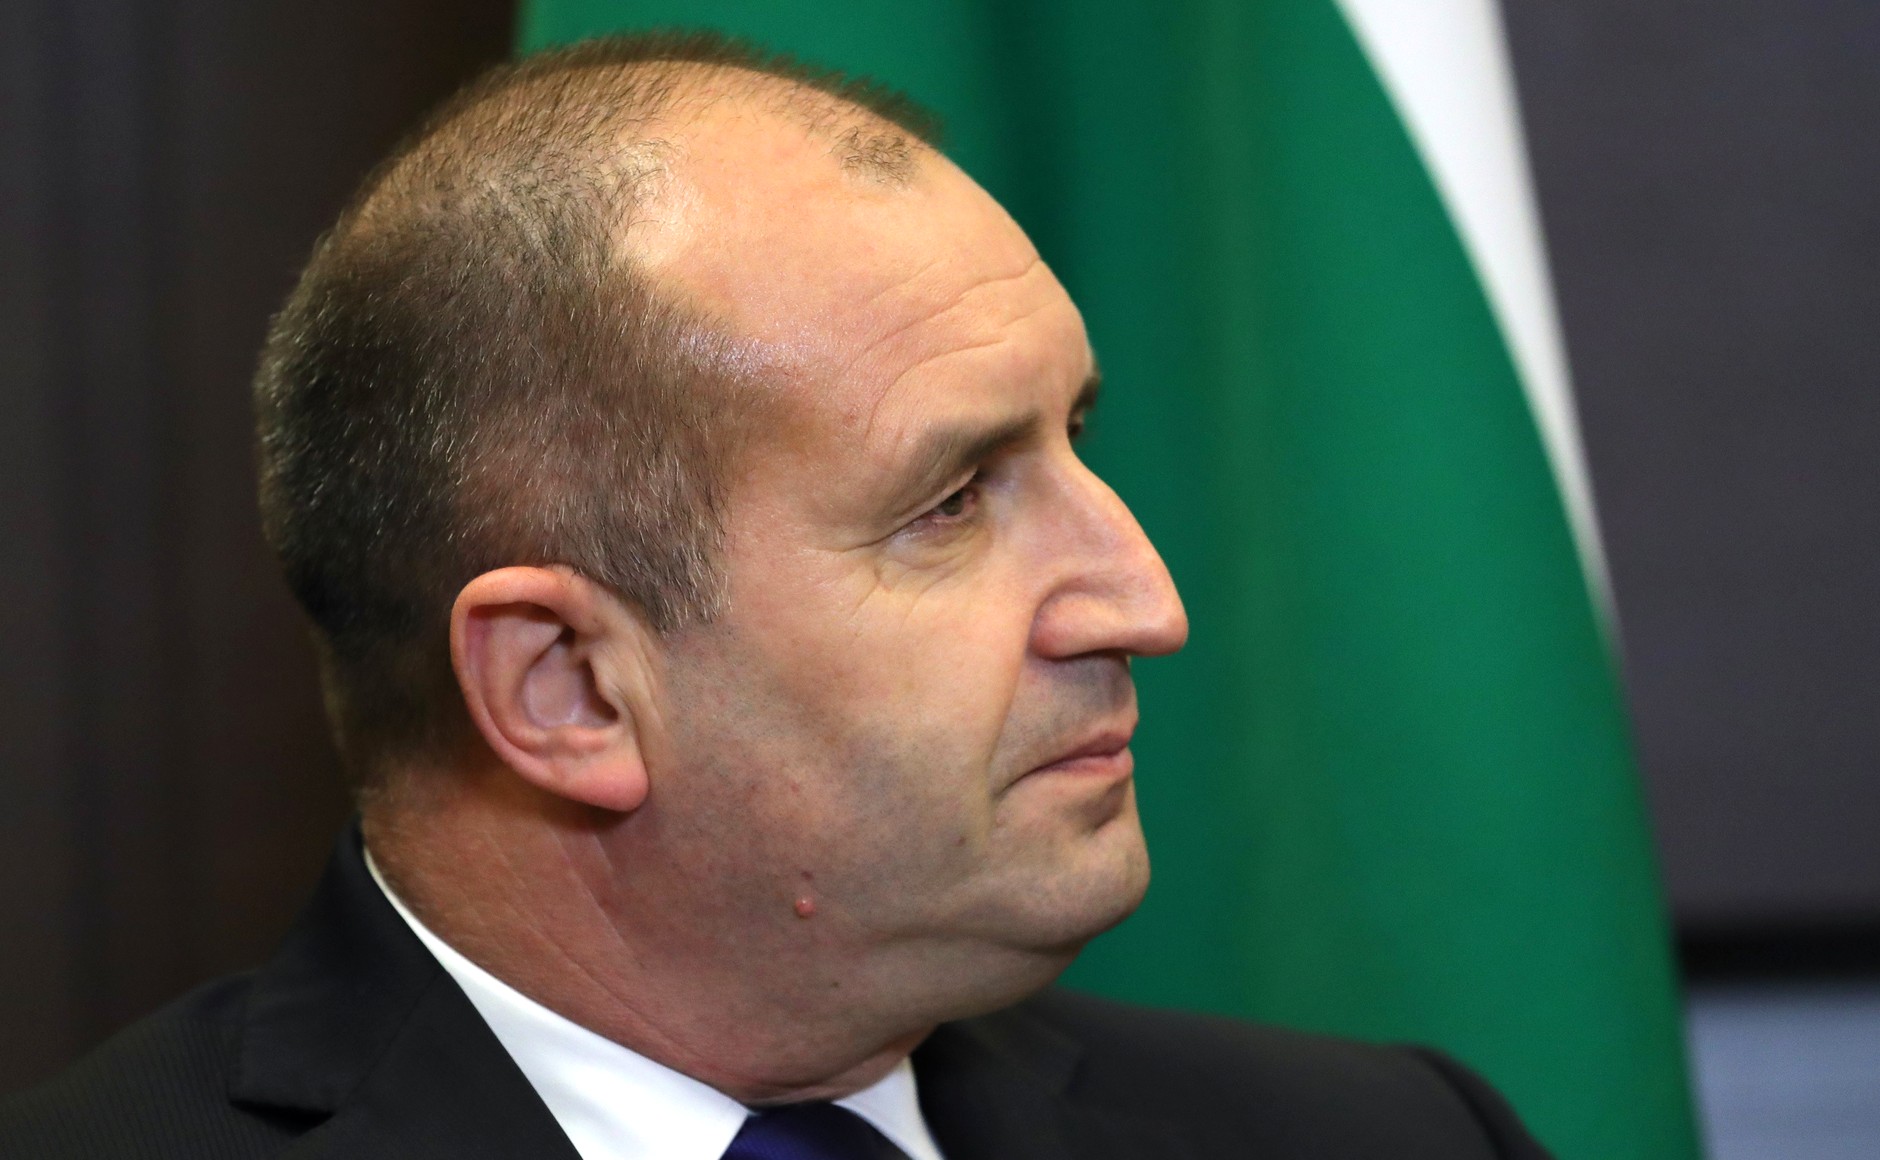 Bulgarian President Rumen Radev